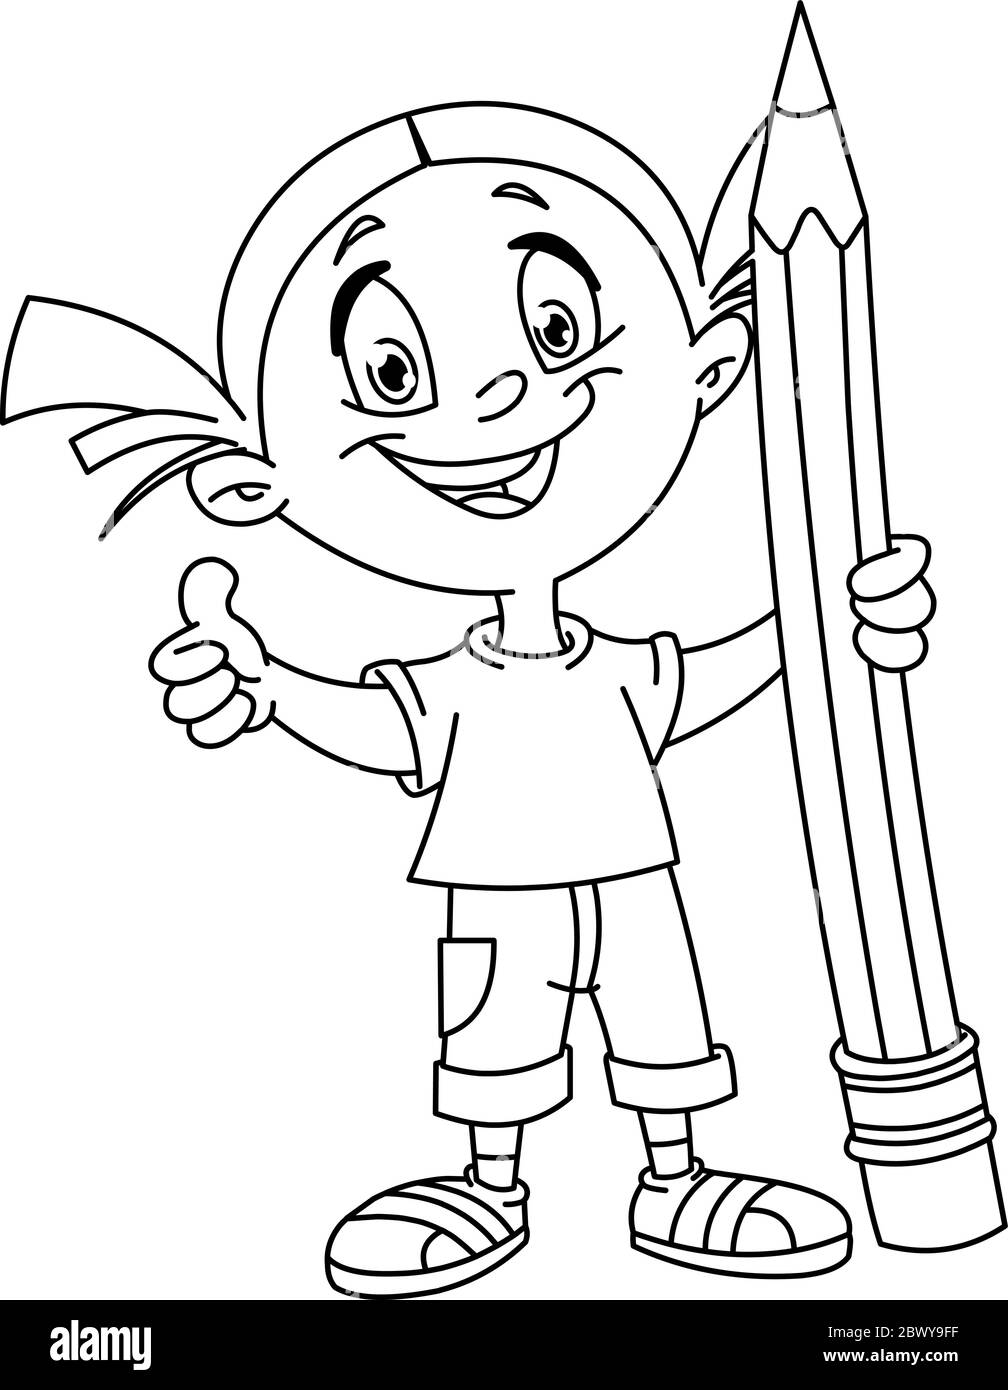 Une jeune fille entourée d'un gros crayon et montrant le pouce vers le haut. Page de coloriage d'illustration vectorielle. Illustration de Vecteur